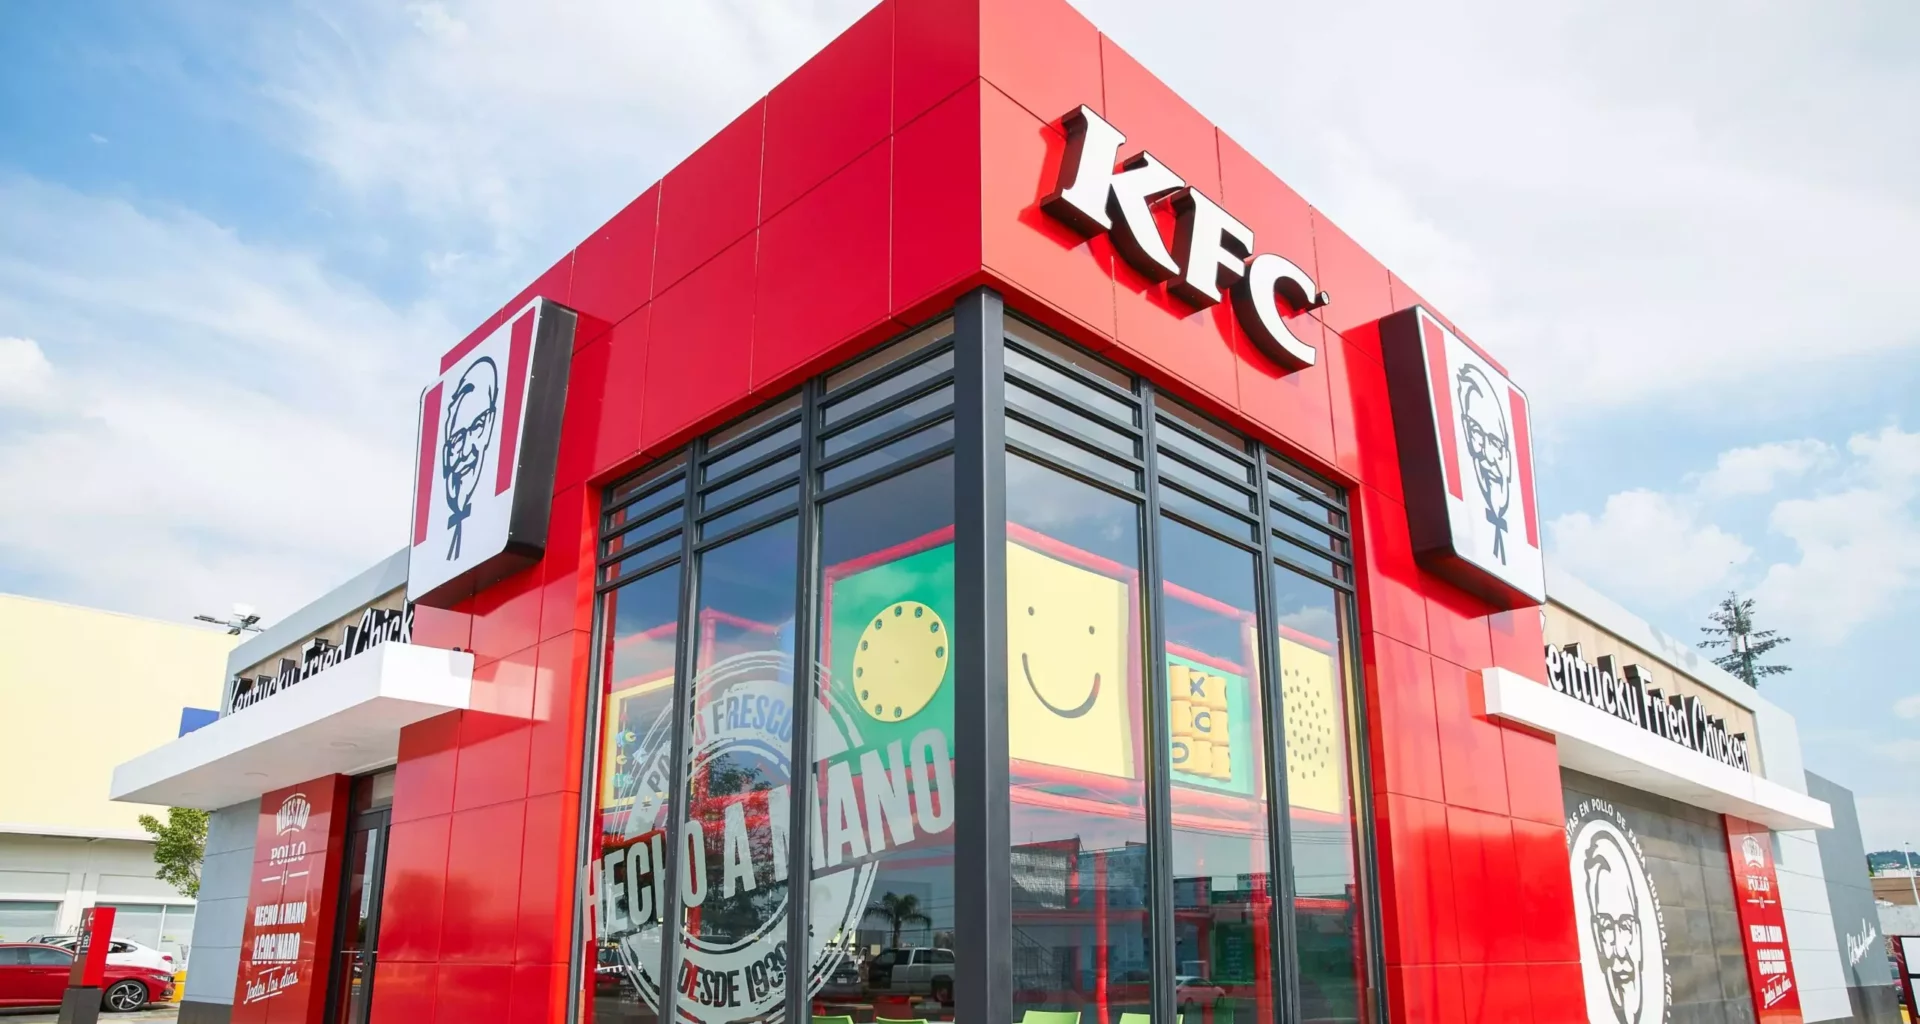 KFC en Baja California Sur: la empresa abre sucursal en La Paz, su restaurante 500